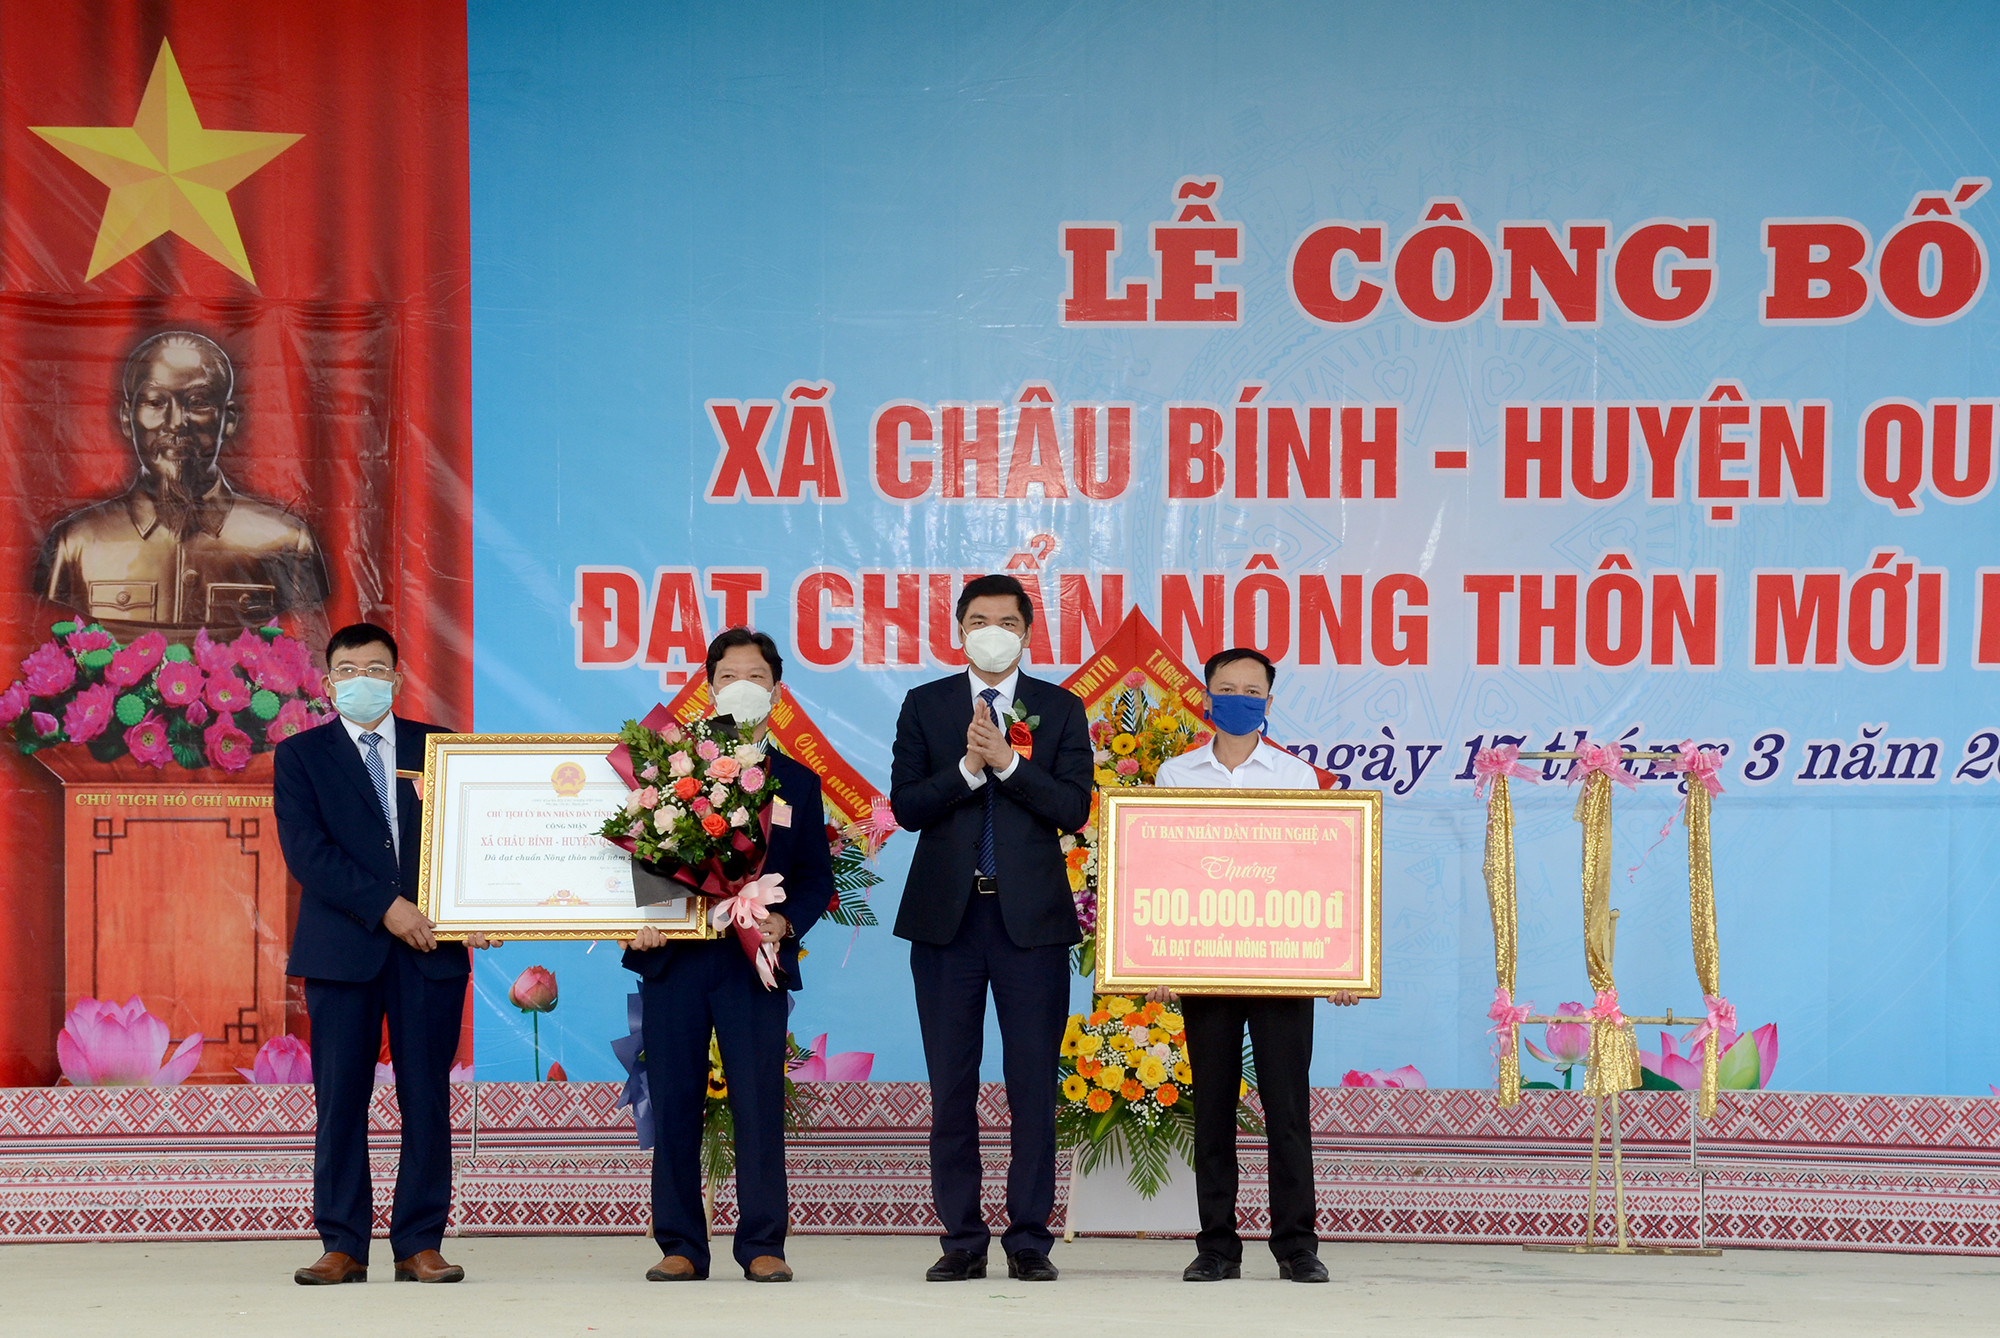 Phó Chủ tịch UBND tỉnh Hoàng Nghĩa Hiếu trao bằng công nhận đạt chuẩn Nông thôn mới và phần quà của tỉnh Nghệ An cho xã Châu Bính. Ảnh Thành Chung